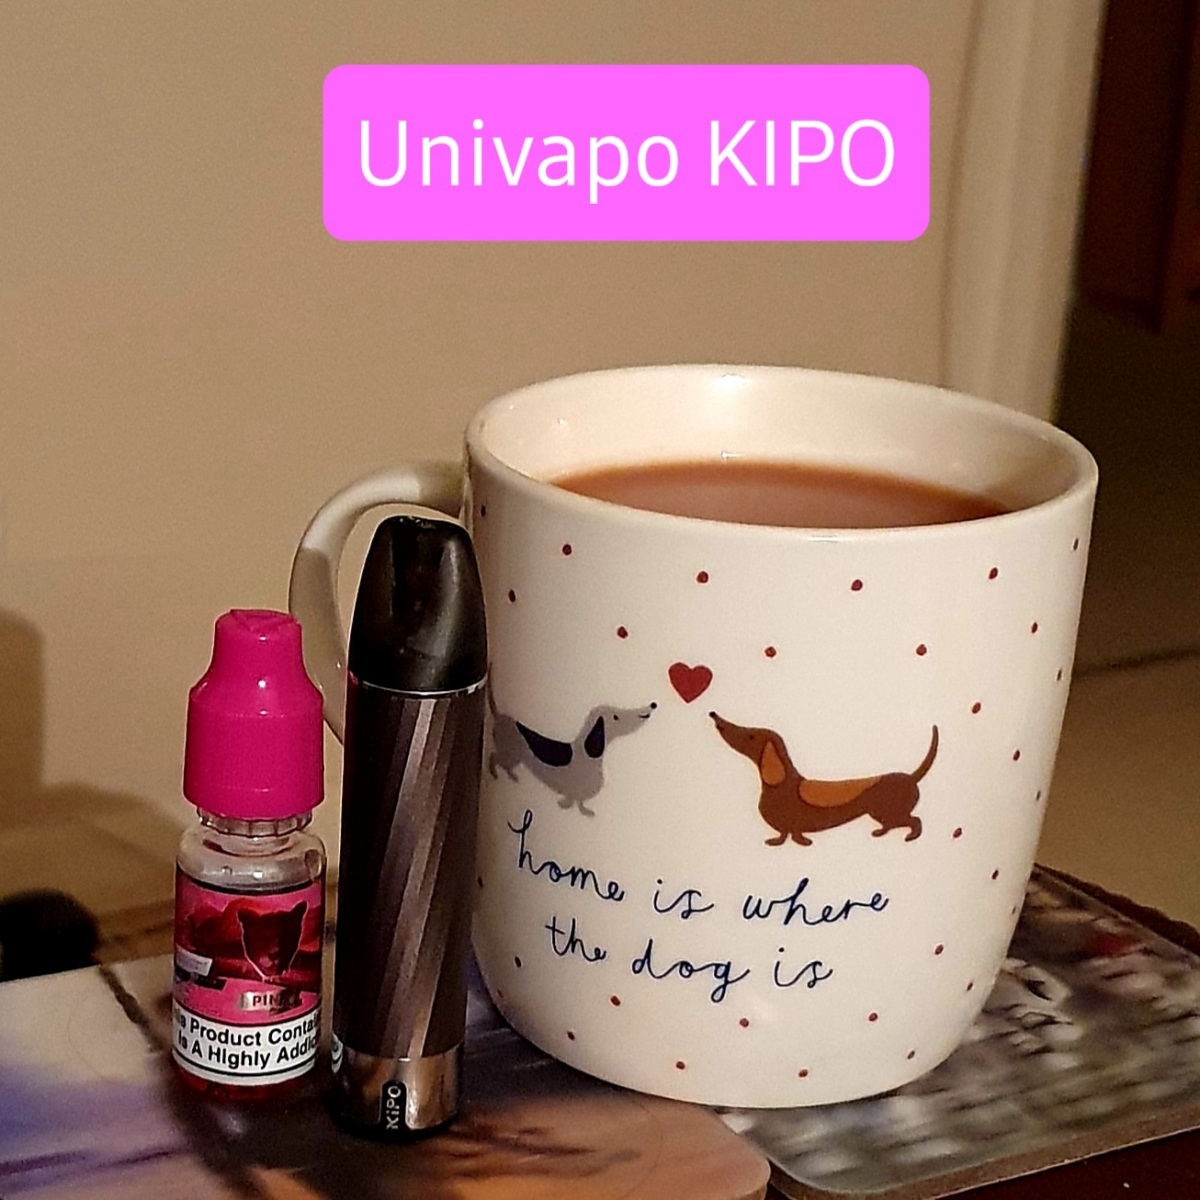 Univapo Kipo Pod Kit and a brew